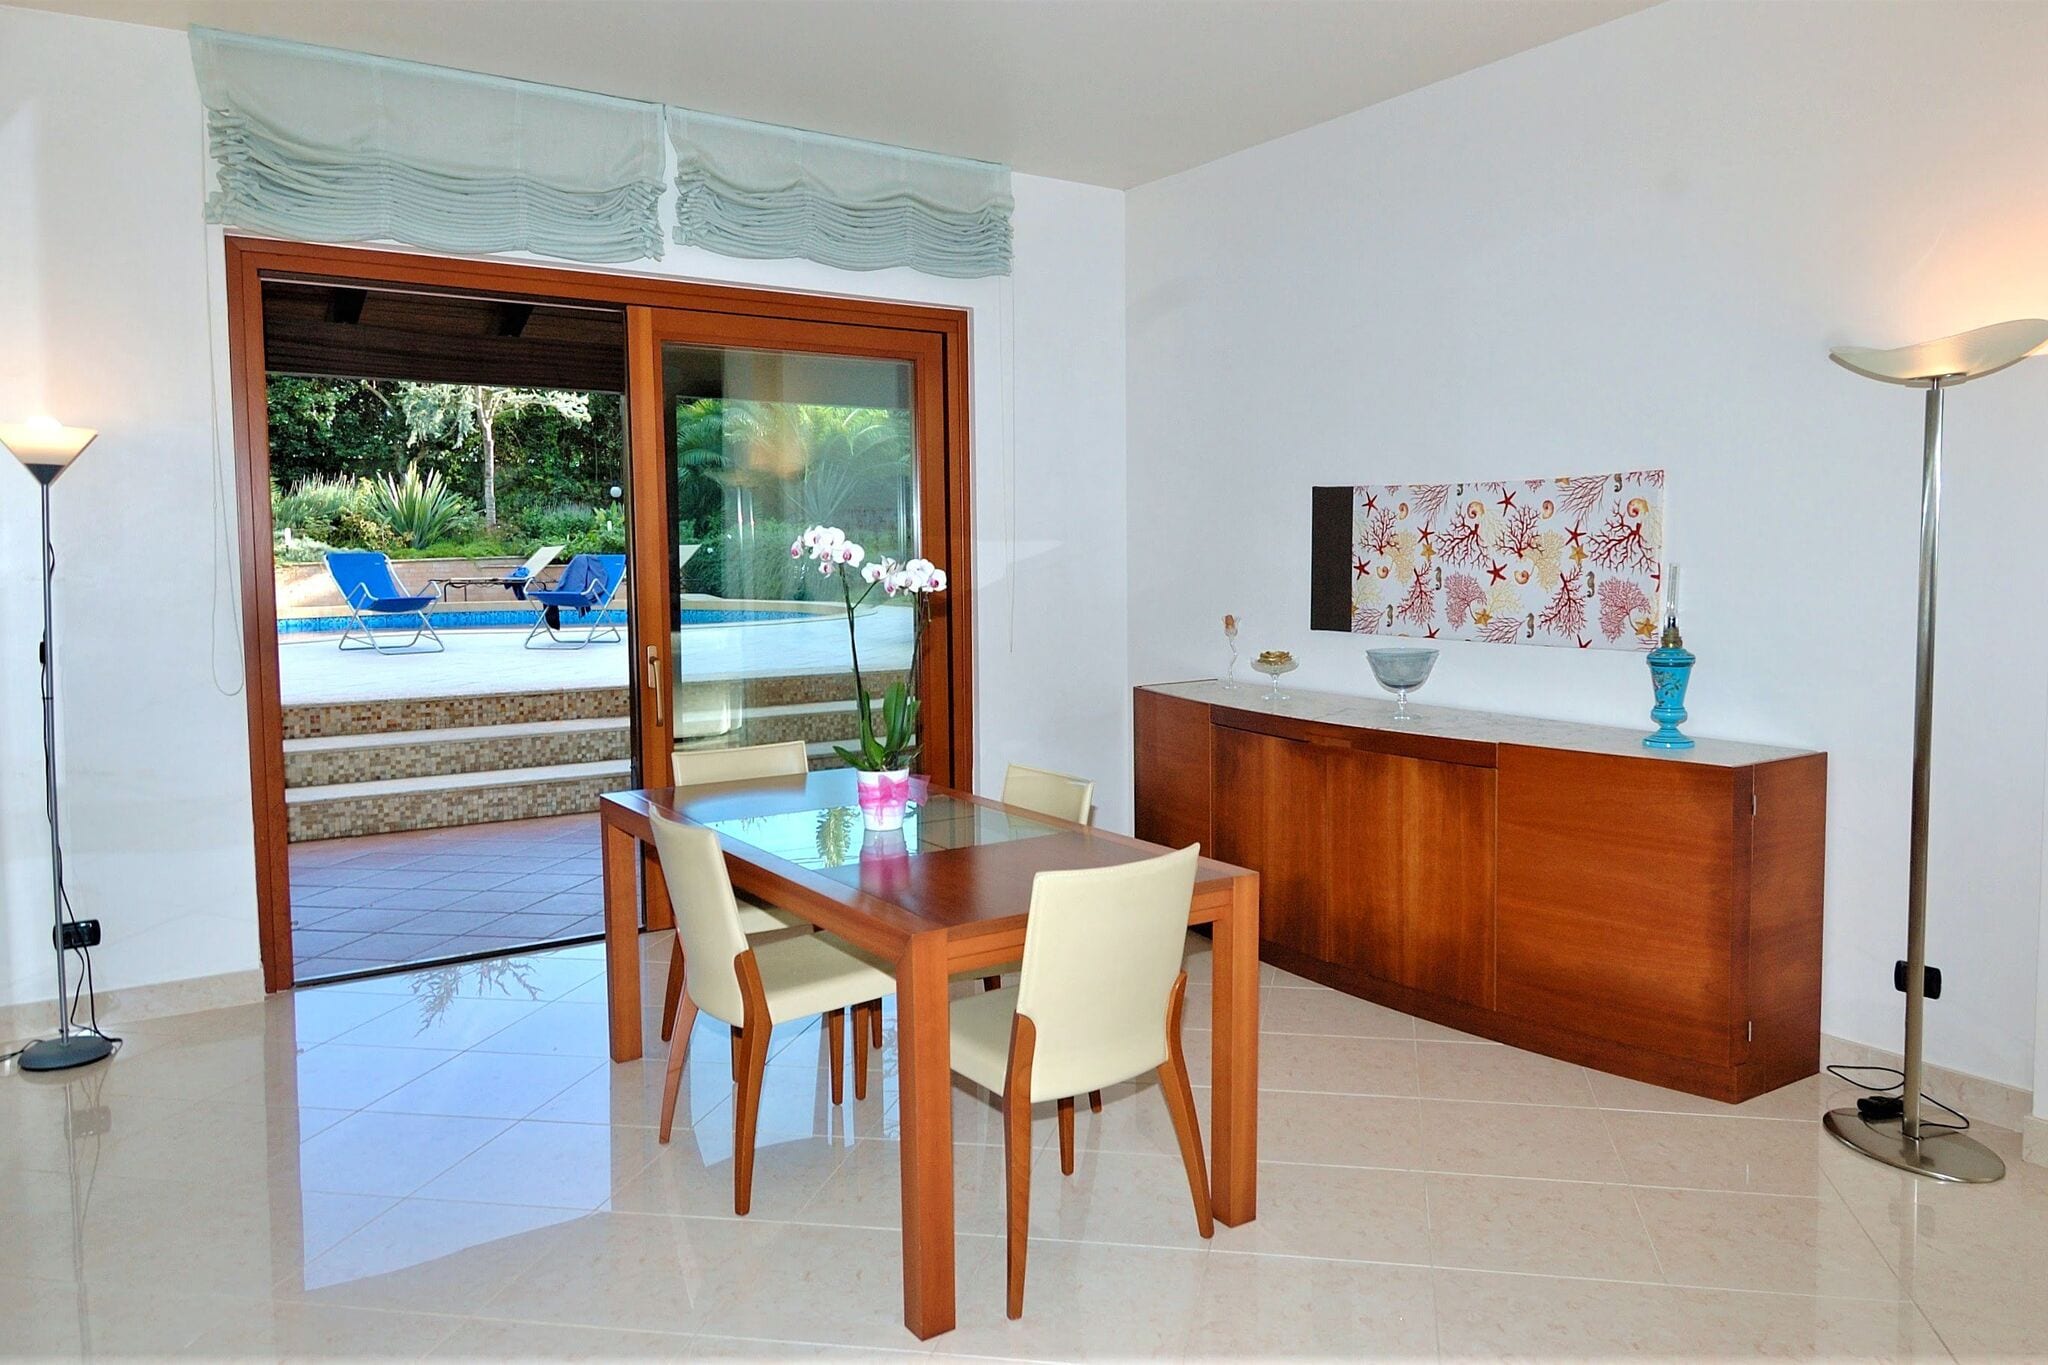 Schitterende, luxe, ruime villa met privé-zwembad en ruime tuin vlakbij zee.